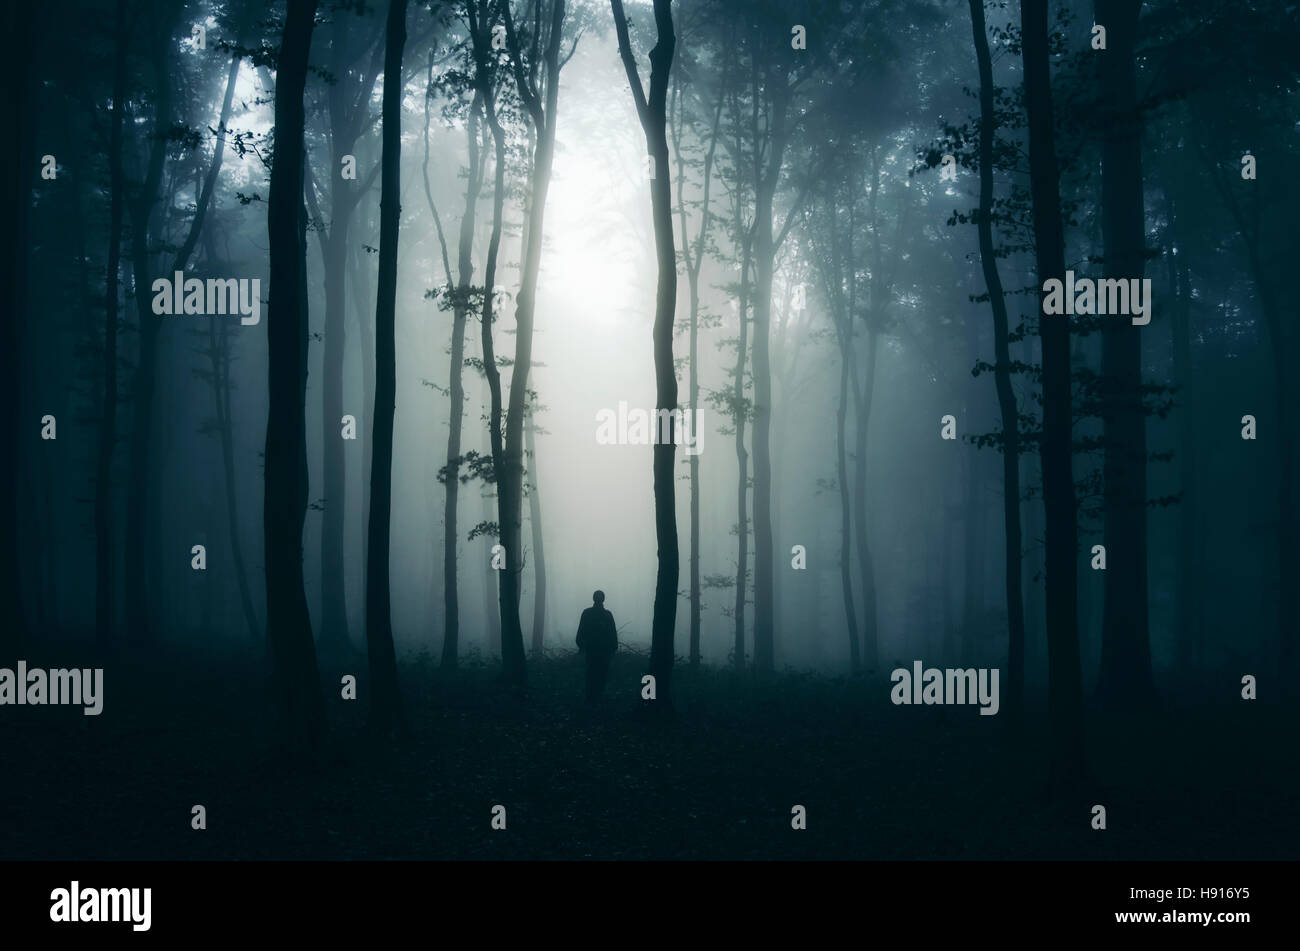 Übernachtung in geheimnisvolle Waldlandschaft. Bäume in der Dunkelheit in nebligen Wäldern mit Mann silhouette Stockfoto